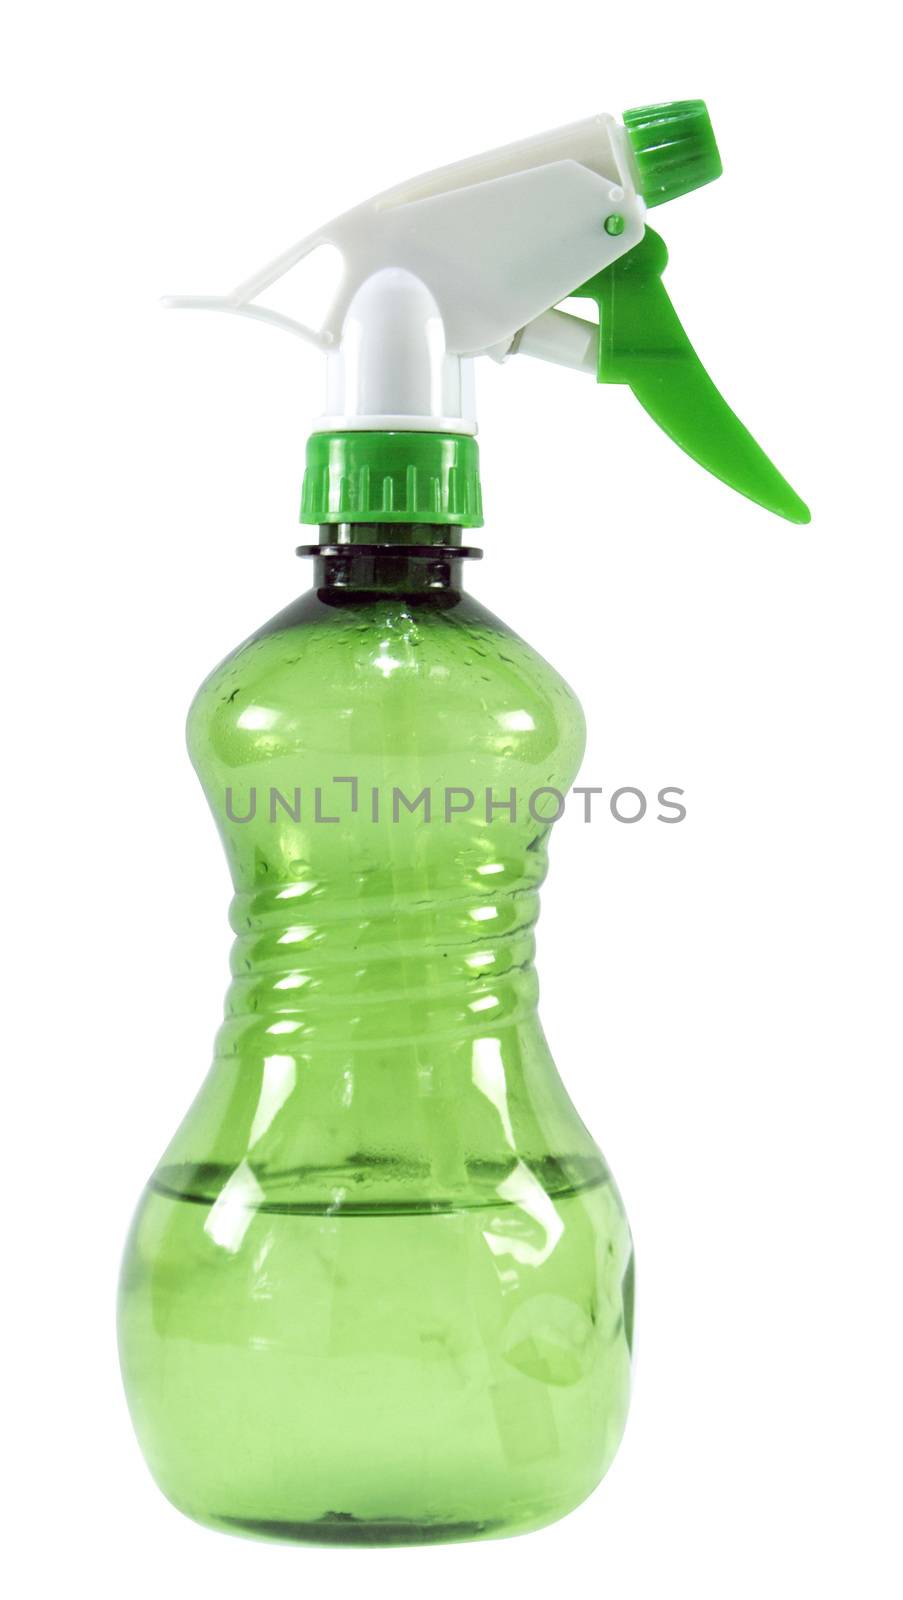 Green plastic spray by designsstock